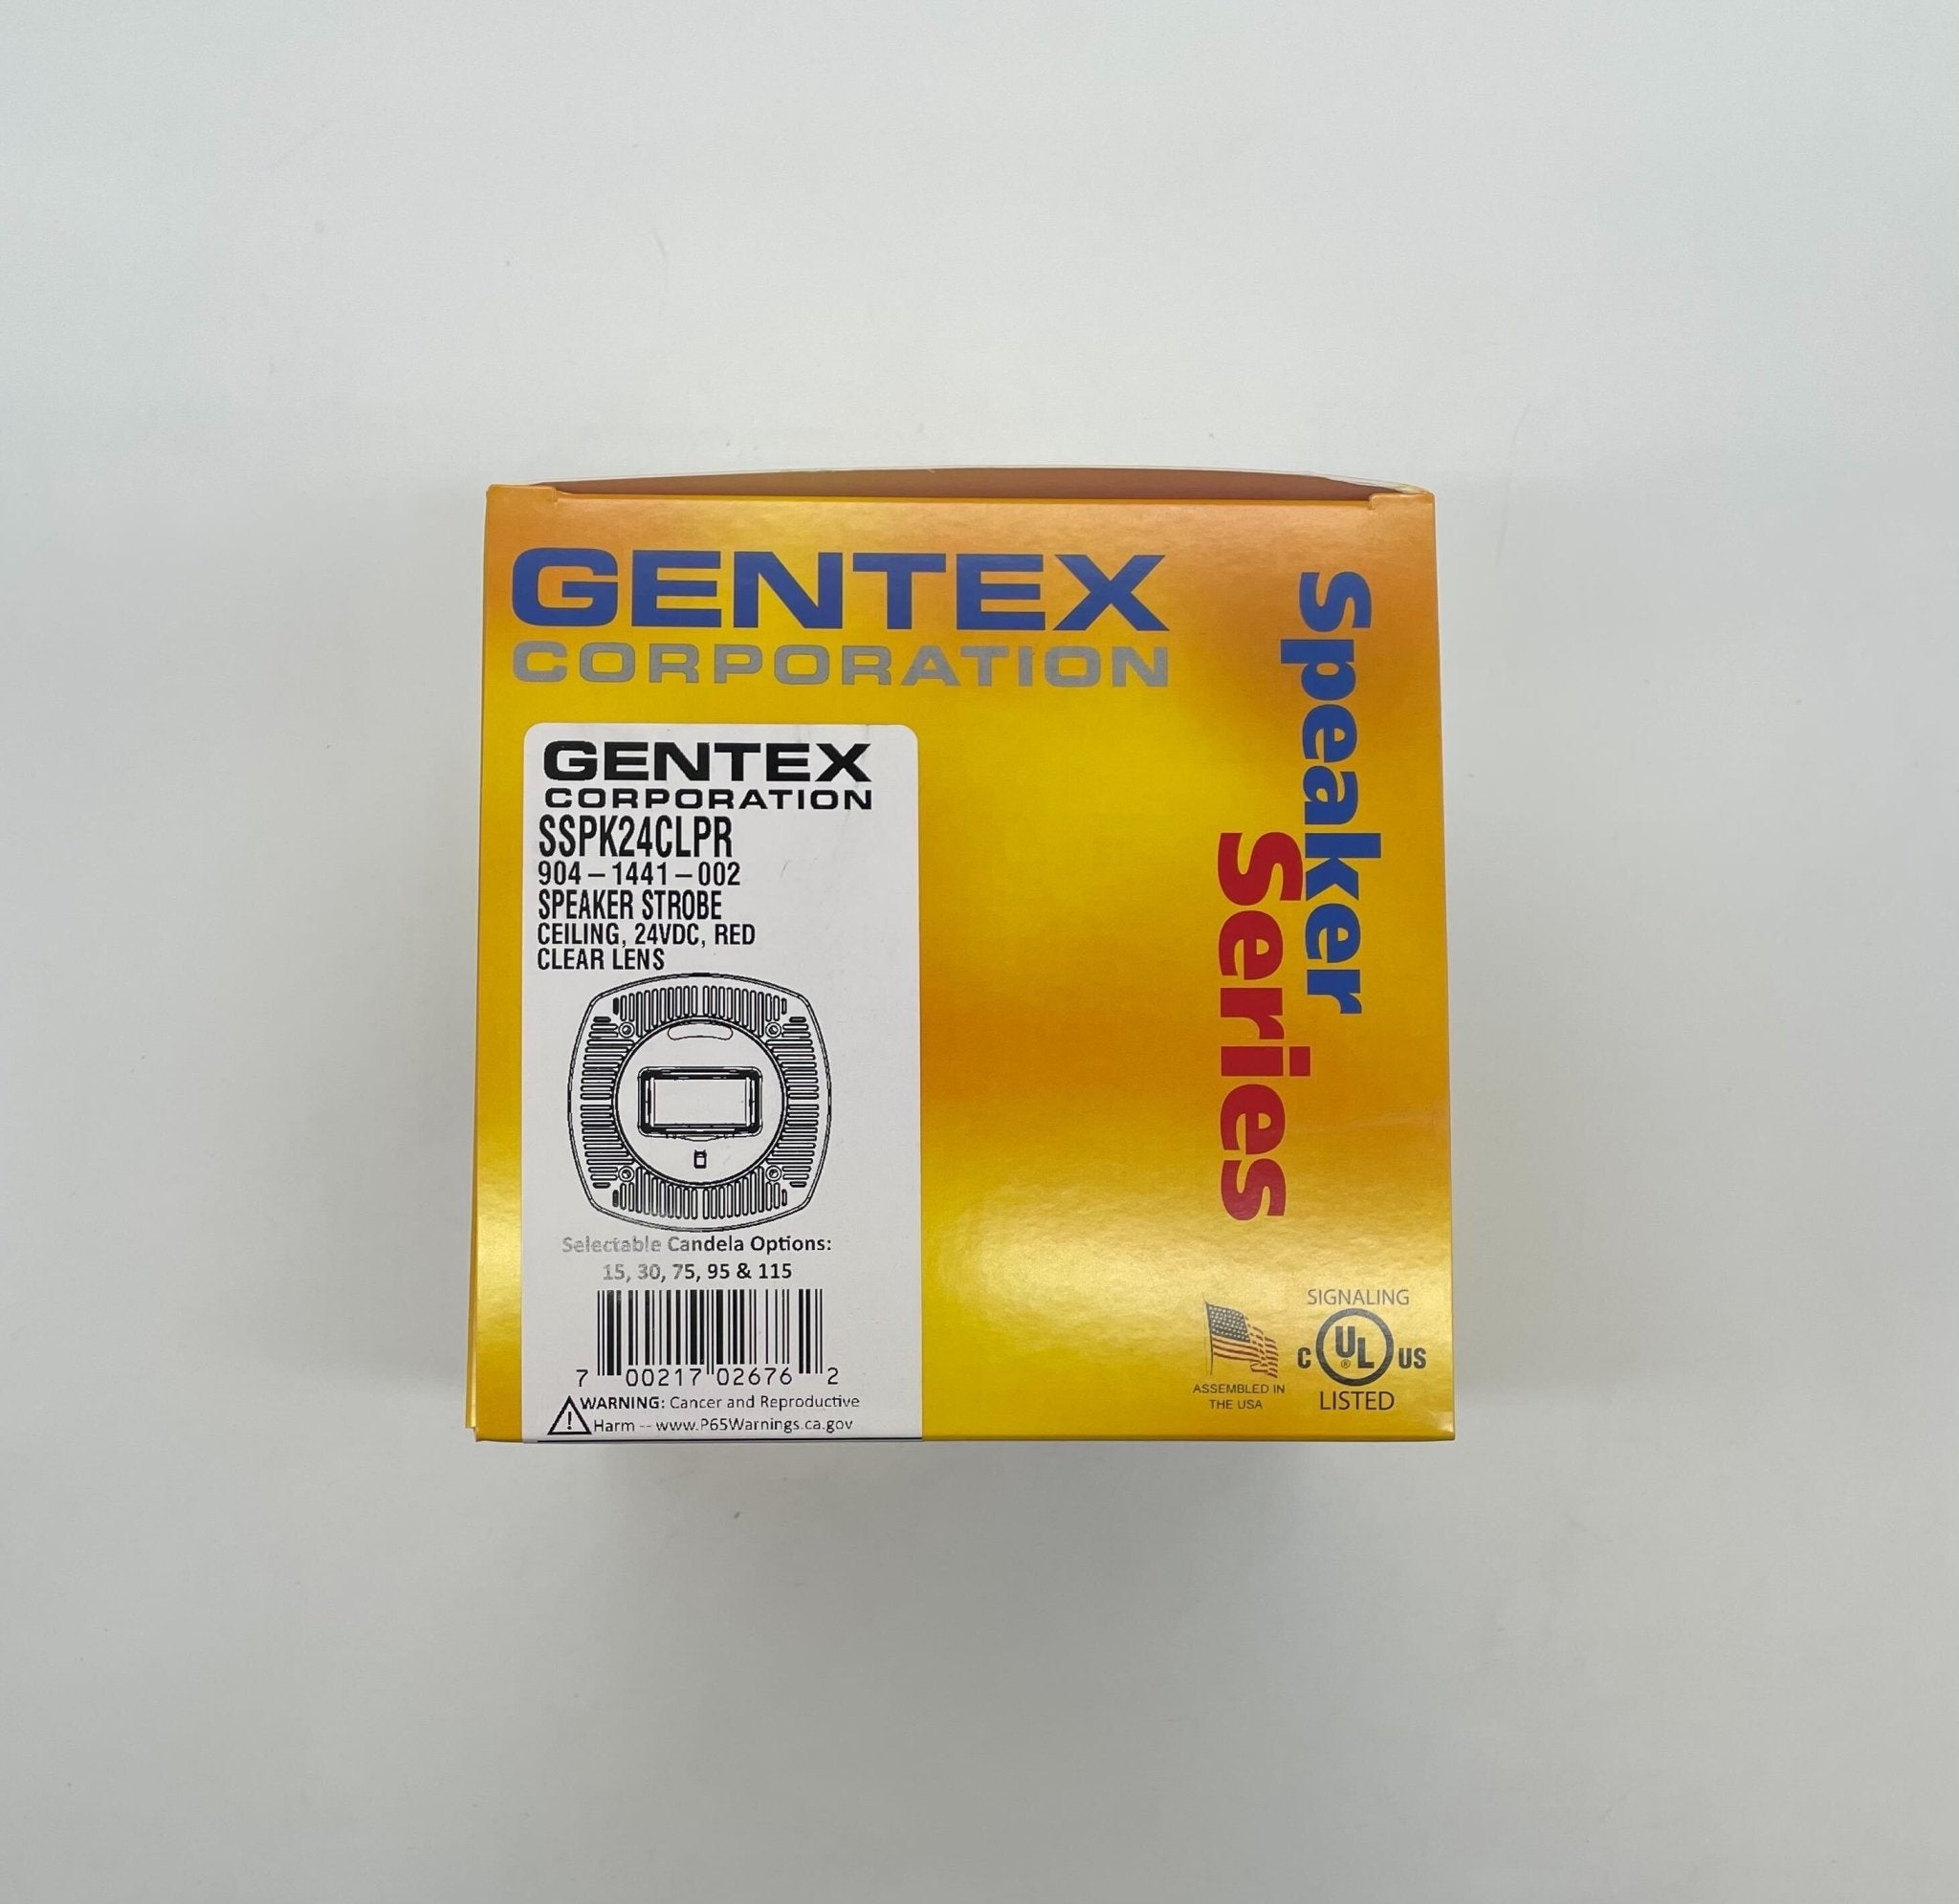 Gentex SSPK24CLPR - The Fire Alarm Supplier